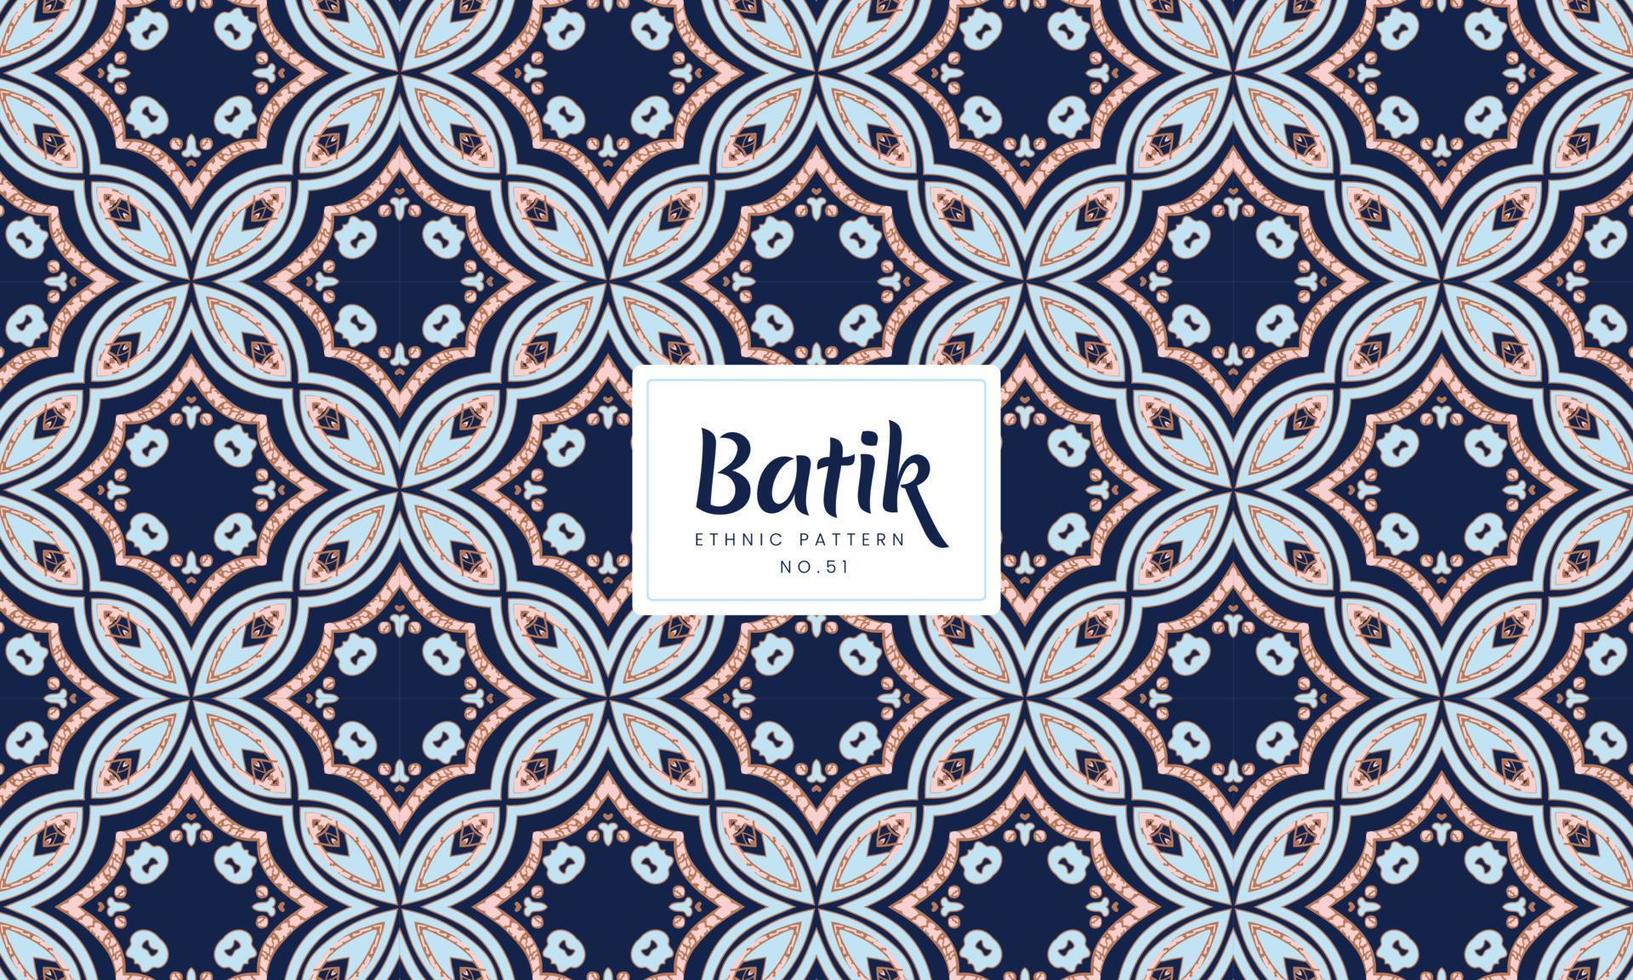 lusso senza soluzione di continuità batik kawung indonesiano tradizionale etnico floreale modelli vettore